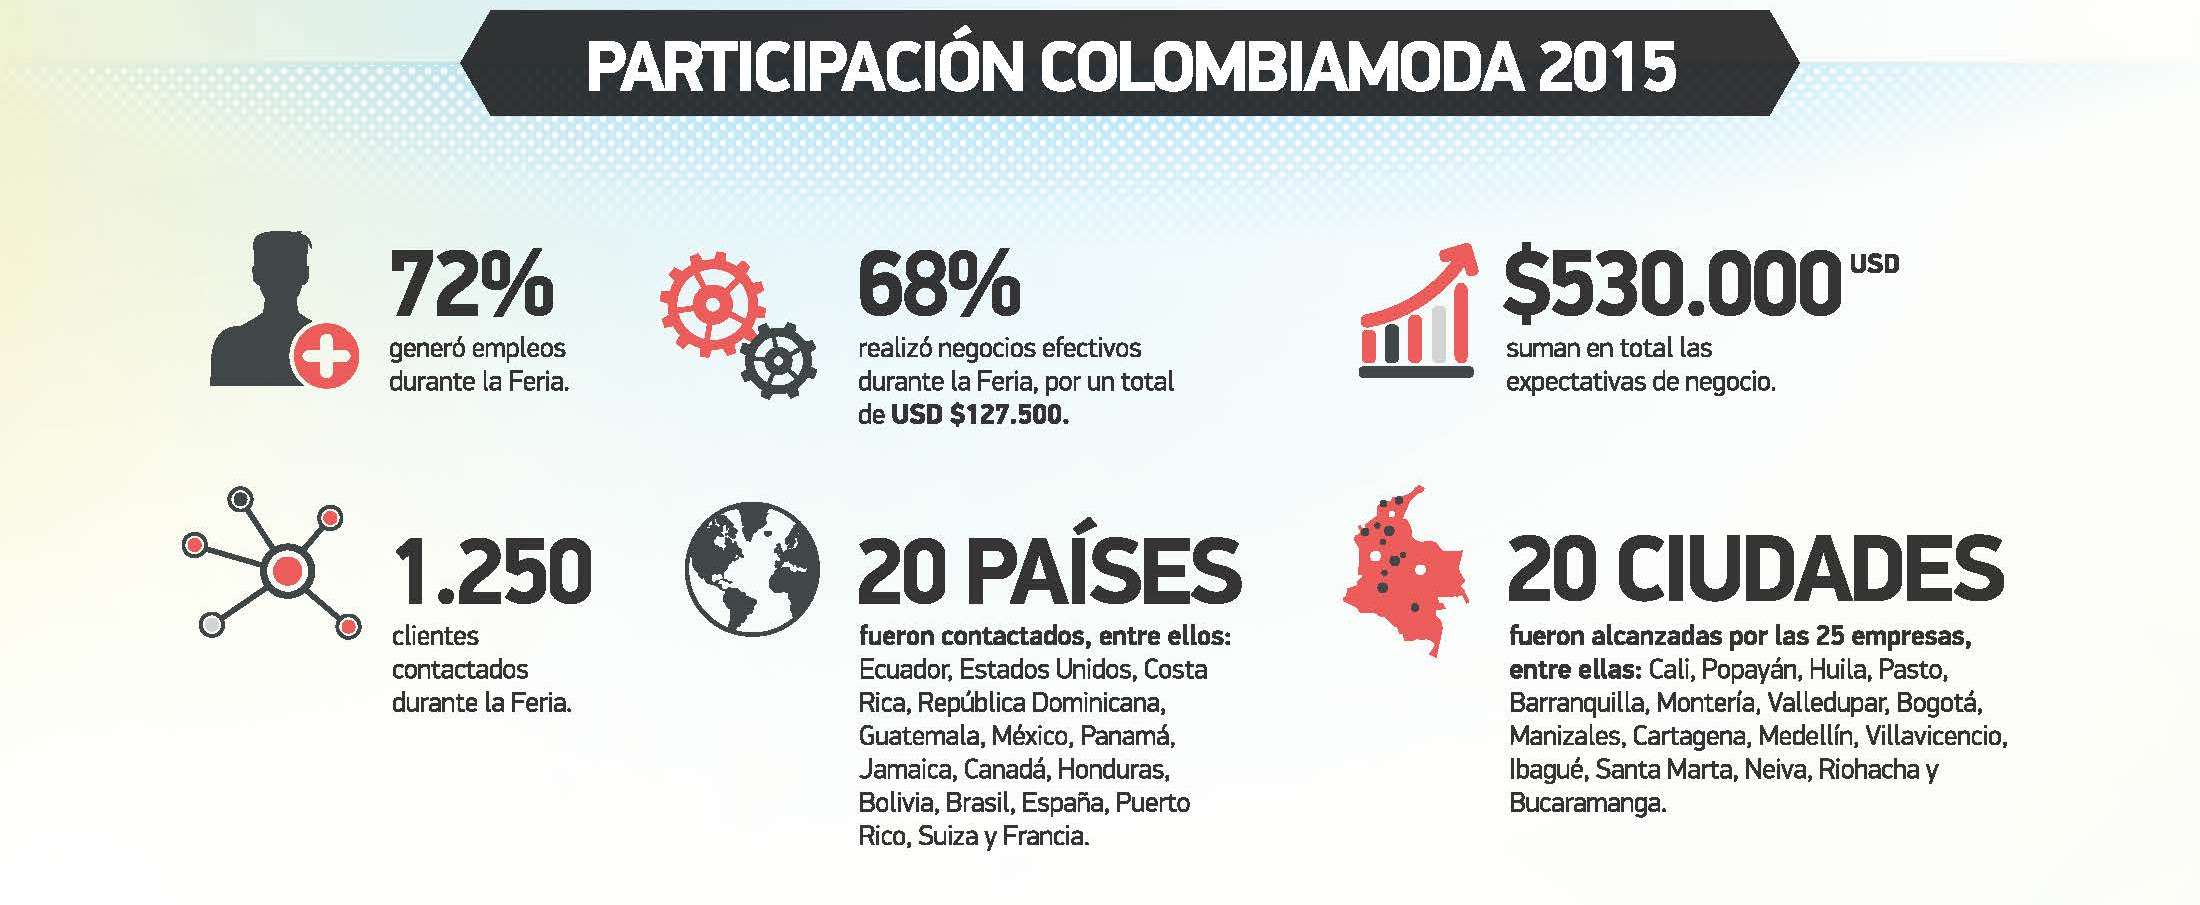 Participación Colombiamoda